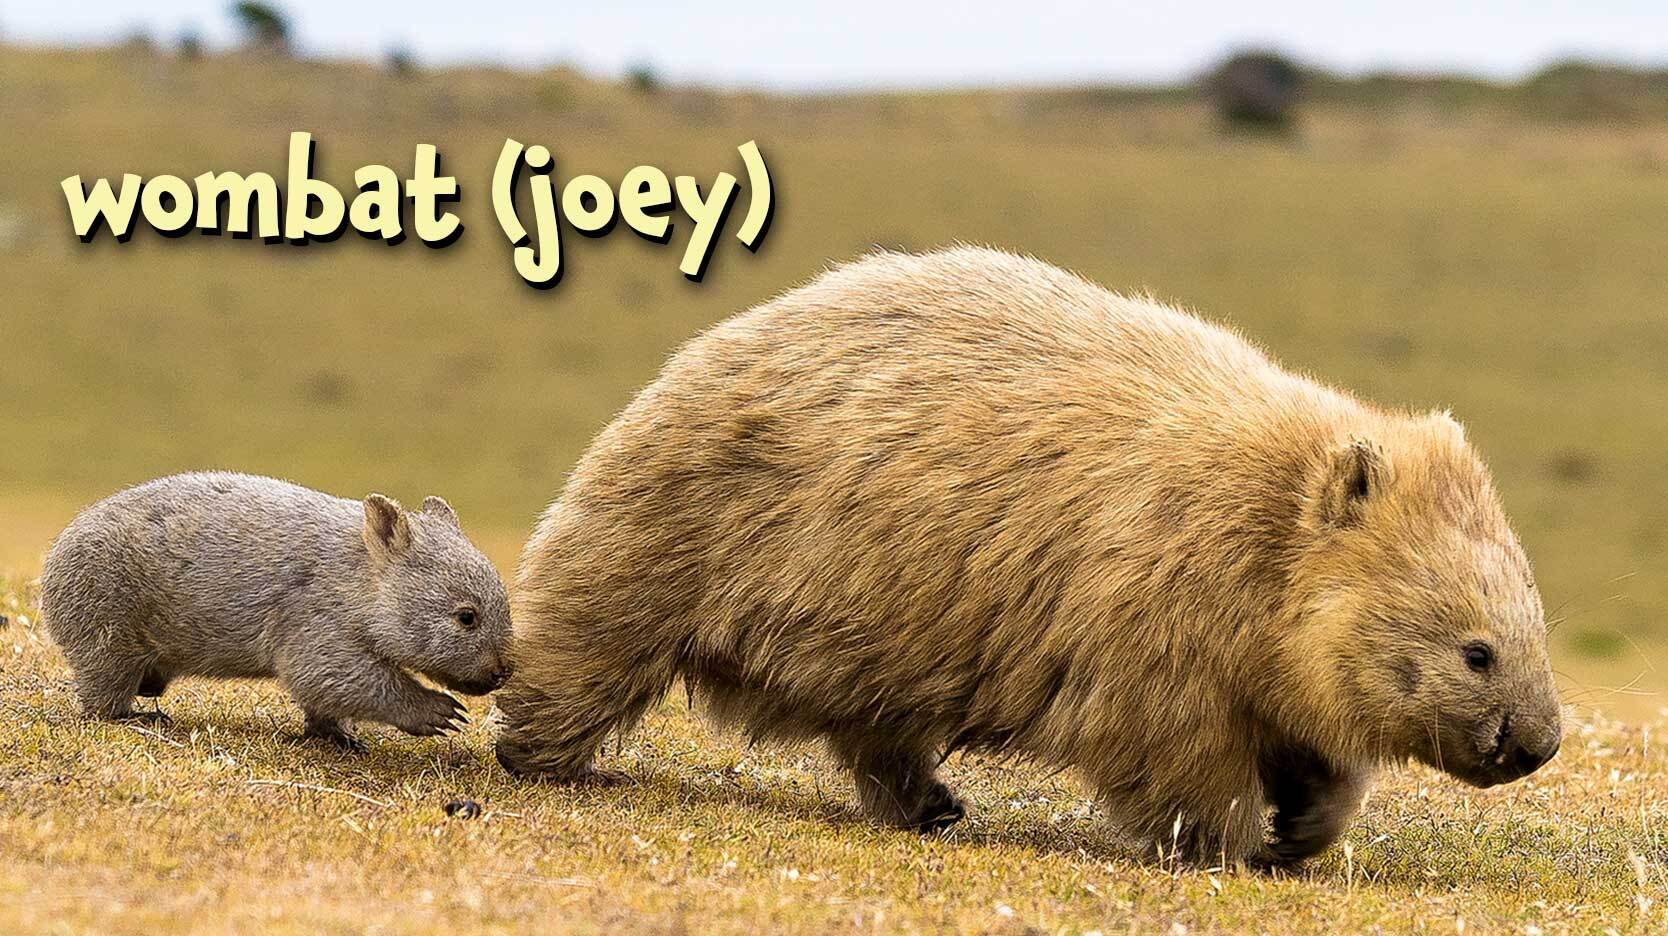 wombat joey